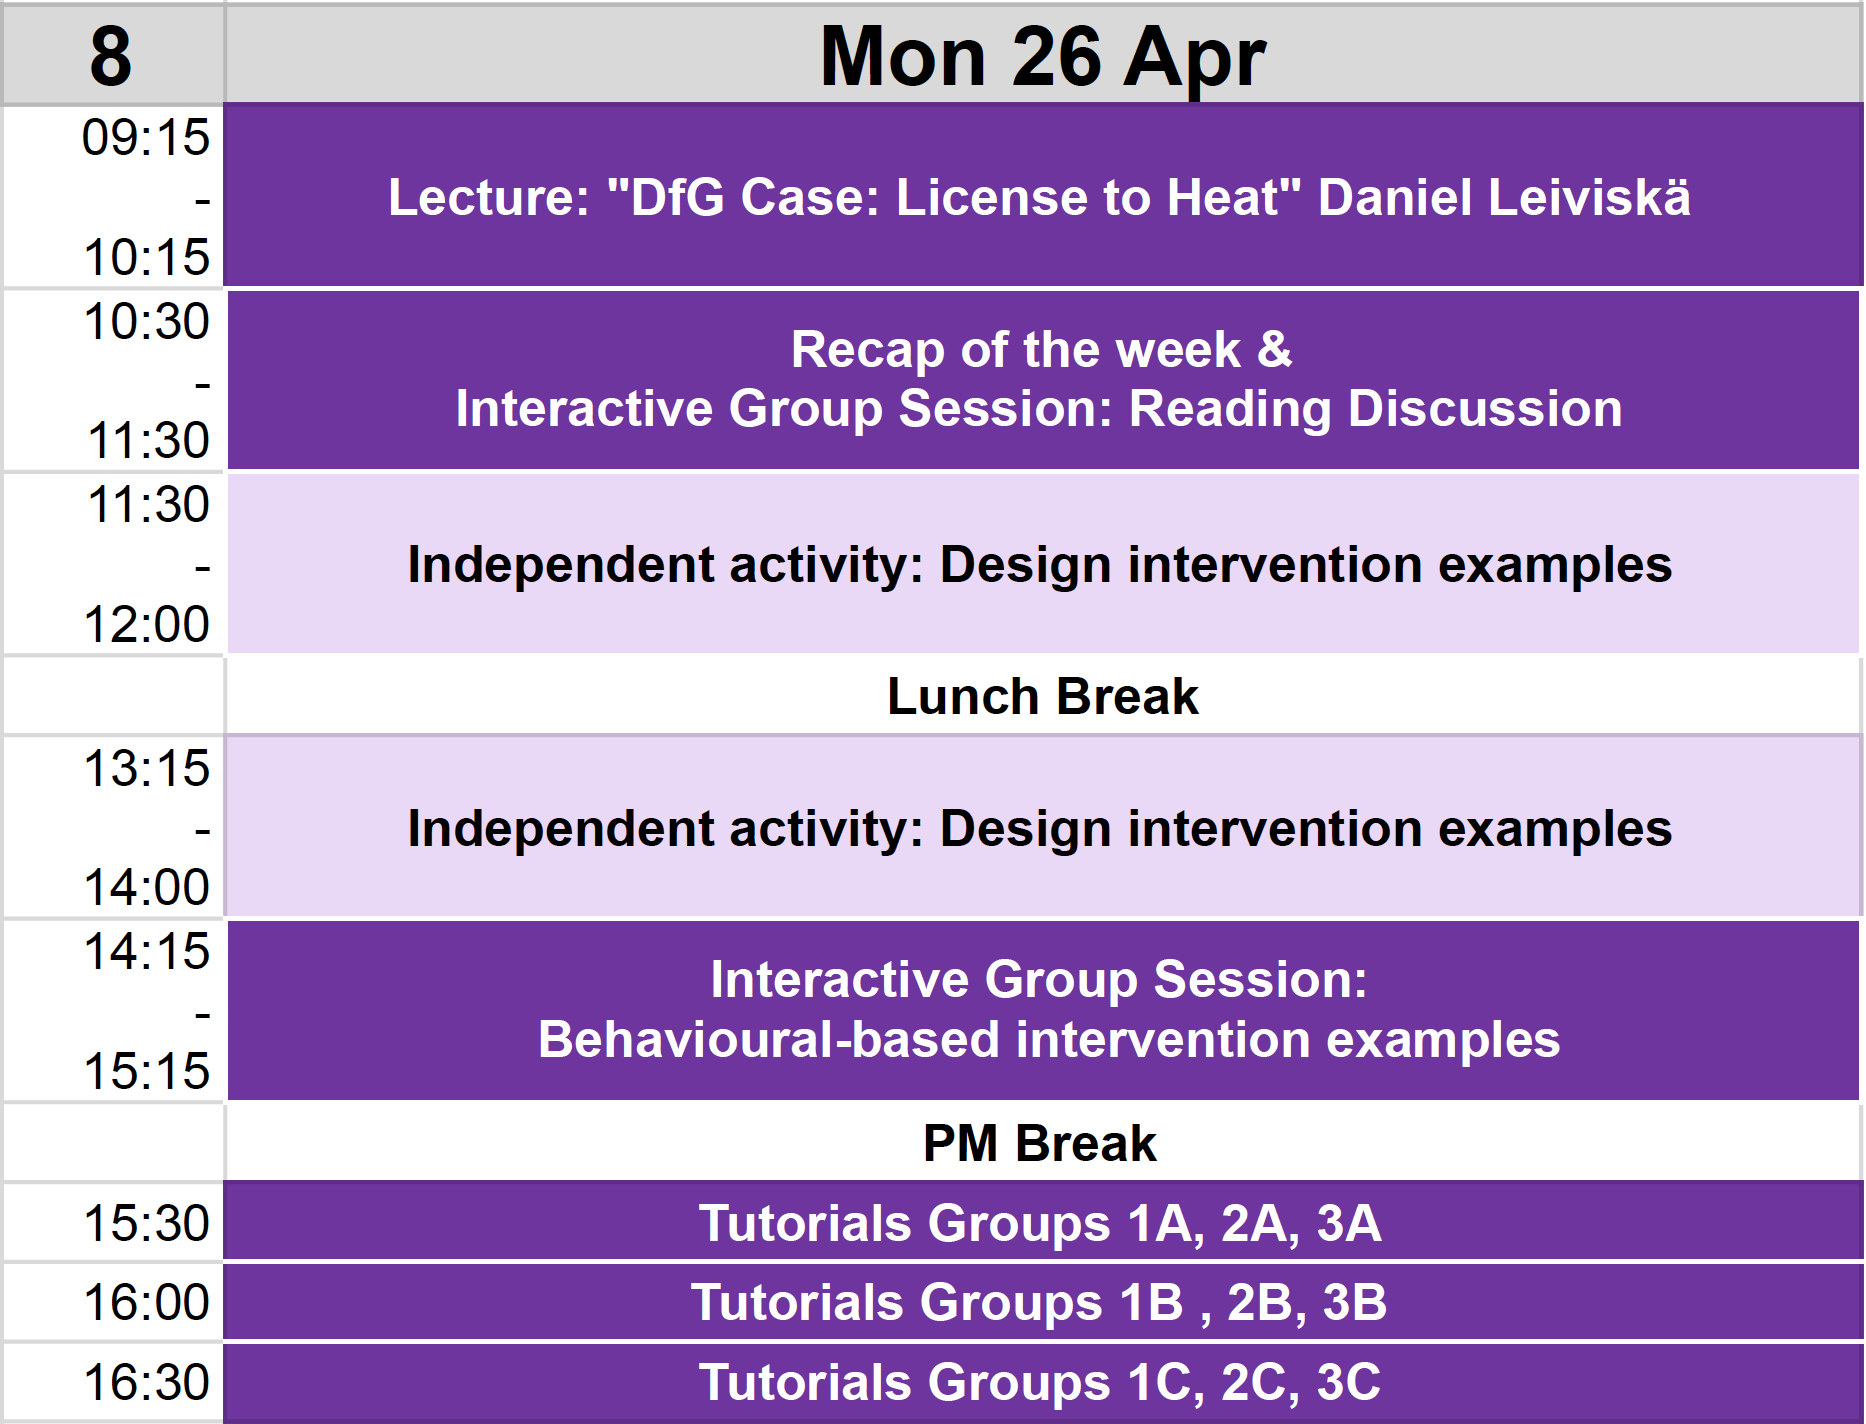 Schedule for contact teaching activities in Week 8